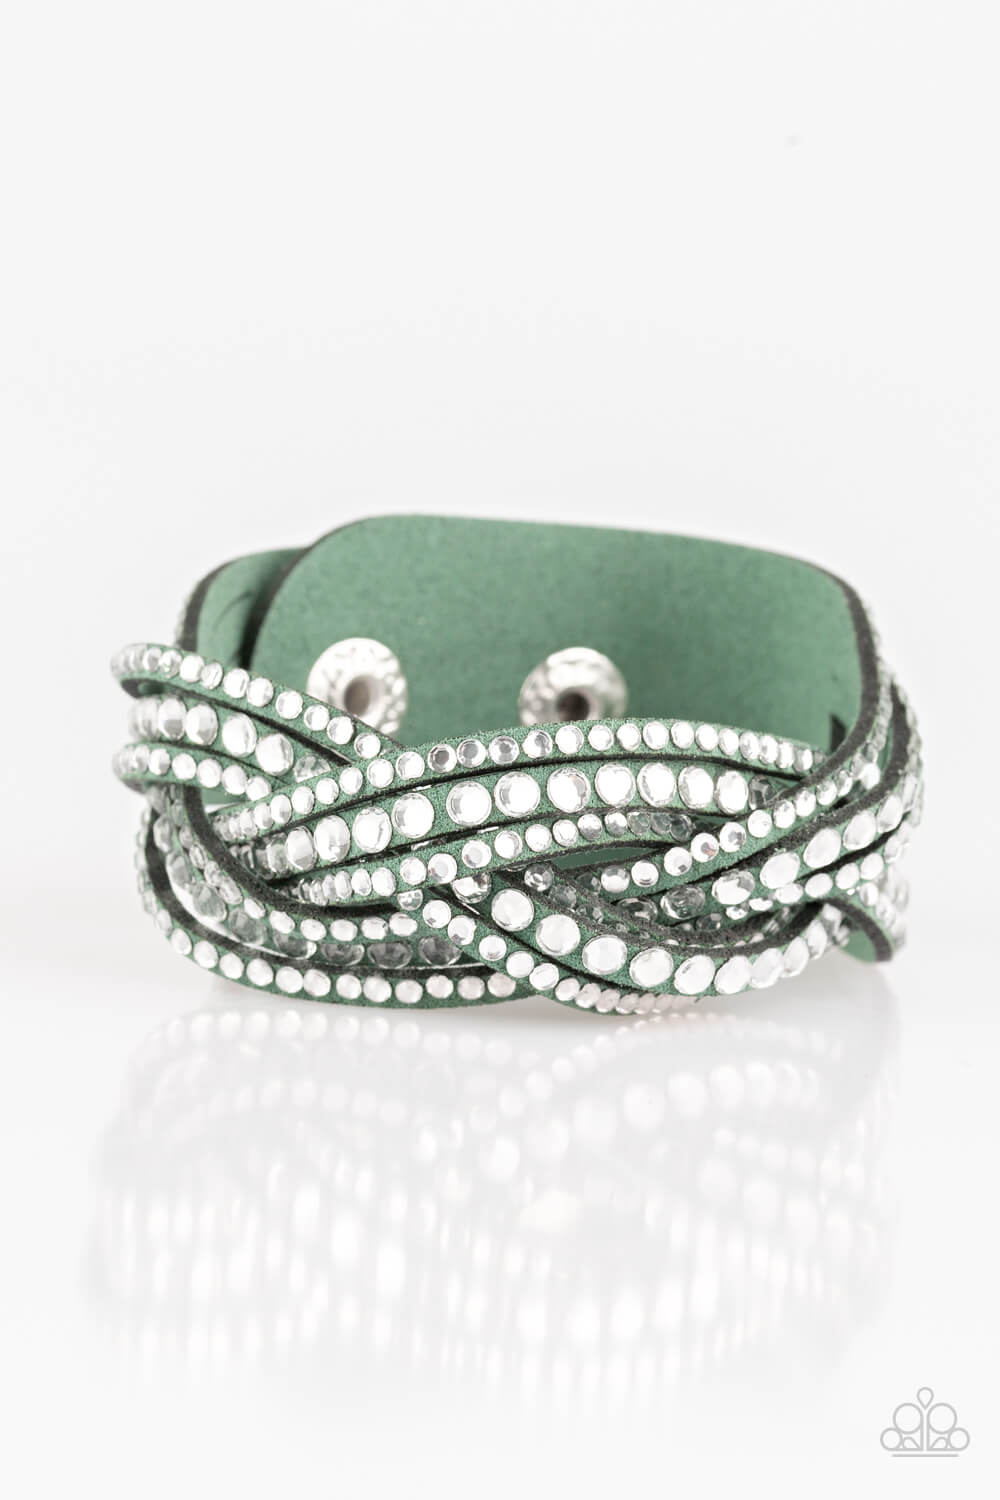 Bring On The Bling - Green Bracelet - Princess Glam Shop